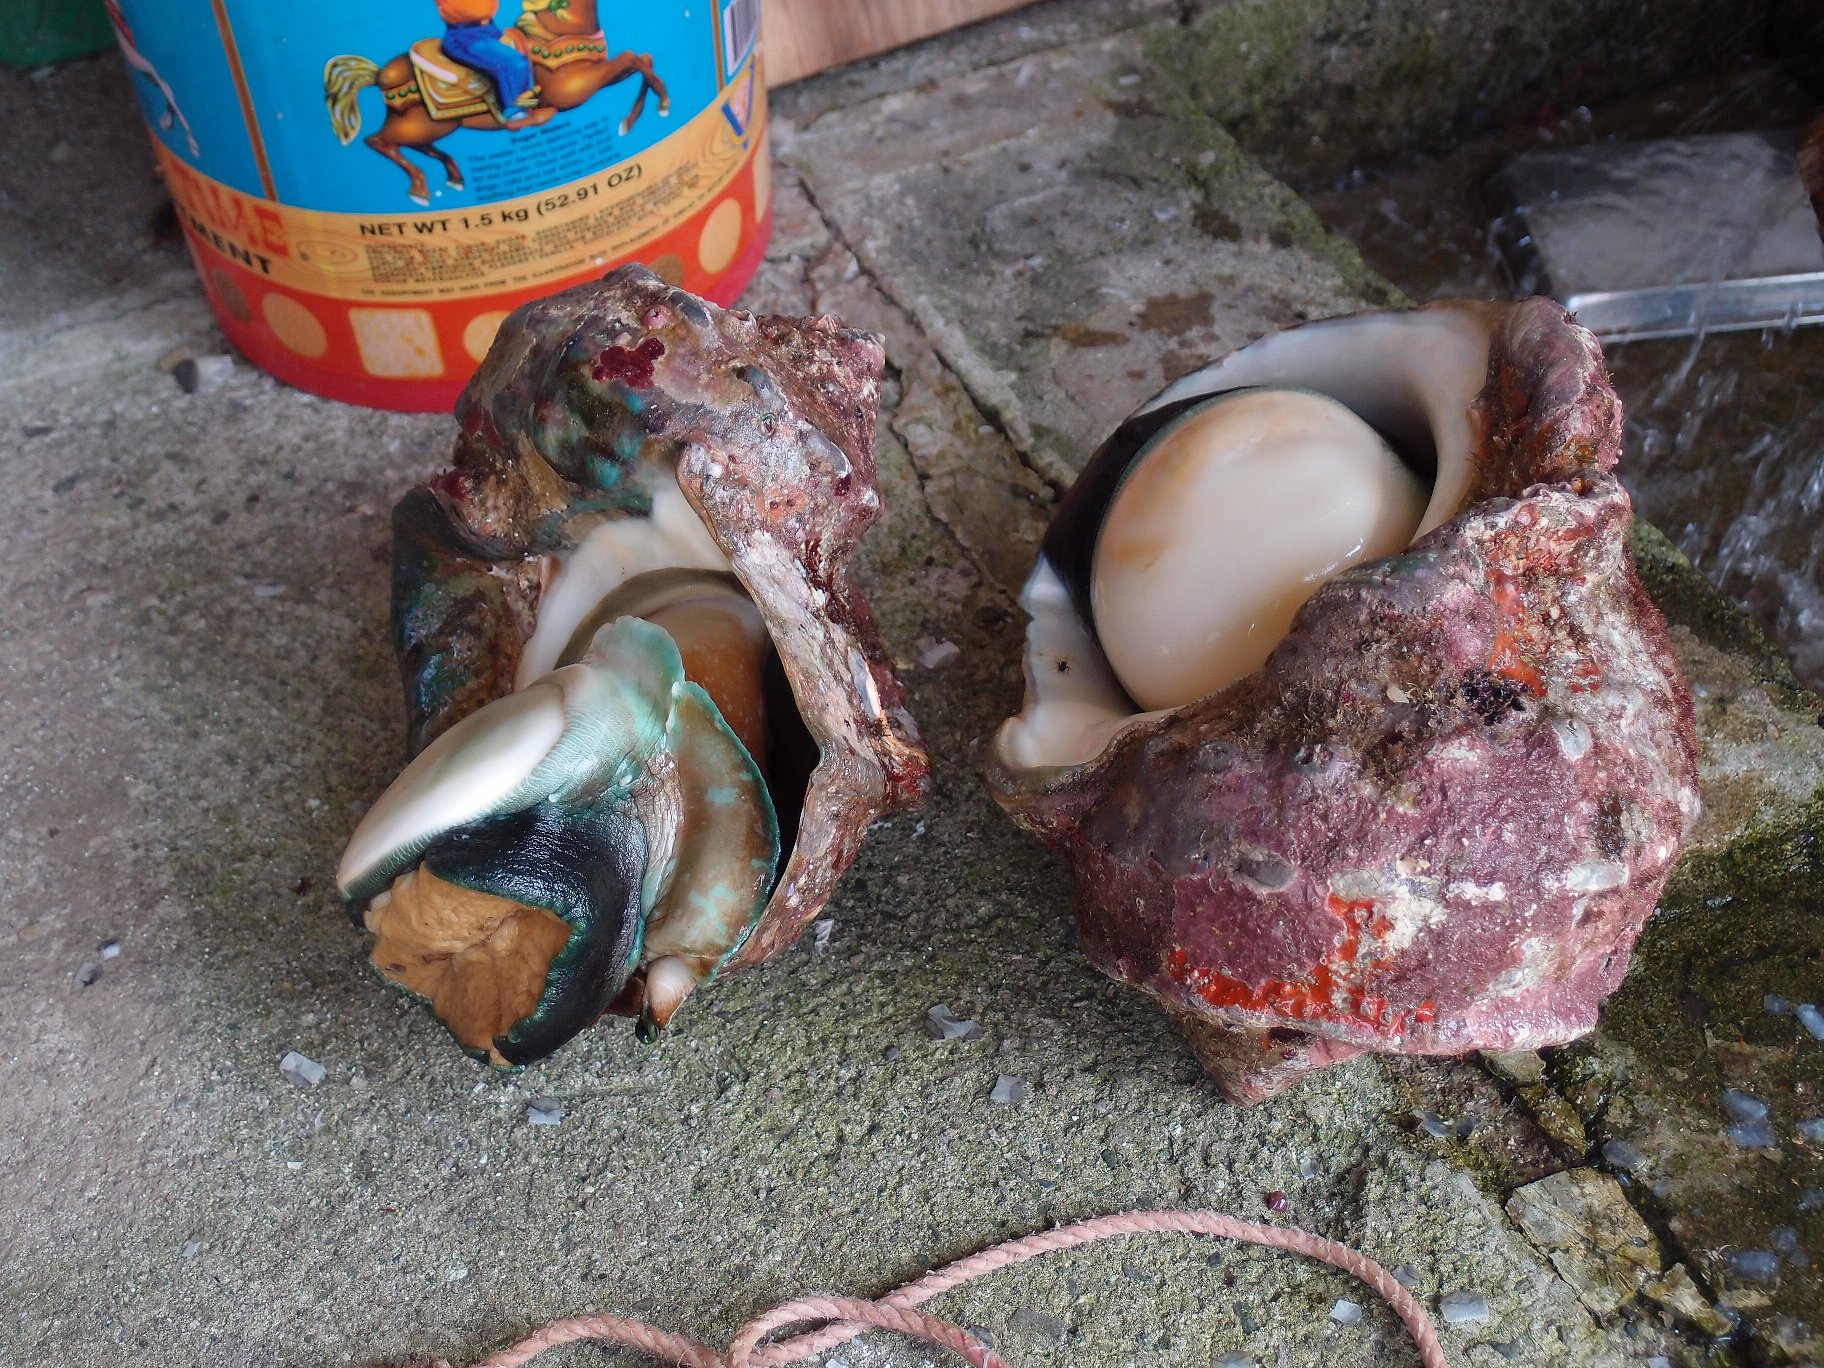 九州特産物リレー7月 ～夜光貝は見てよし、食べてよし～ 【屋久島地域】 | 九州地方環境事務所 | 環境省